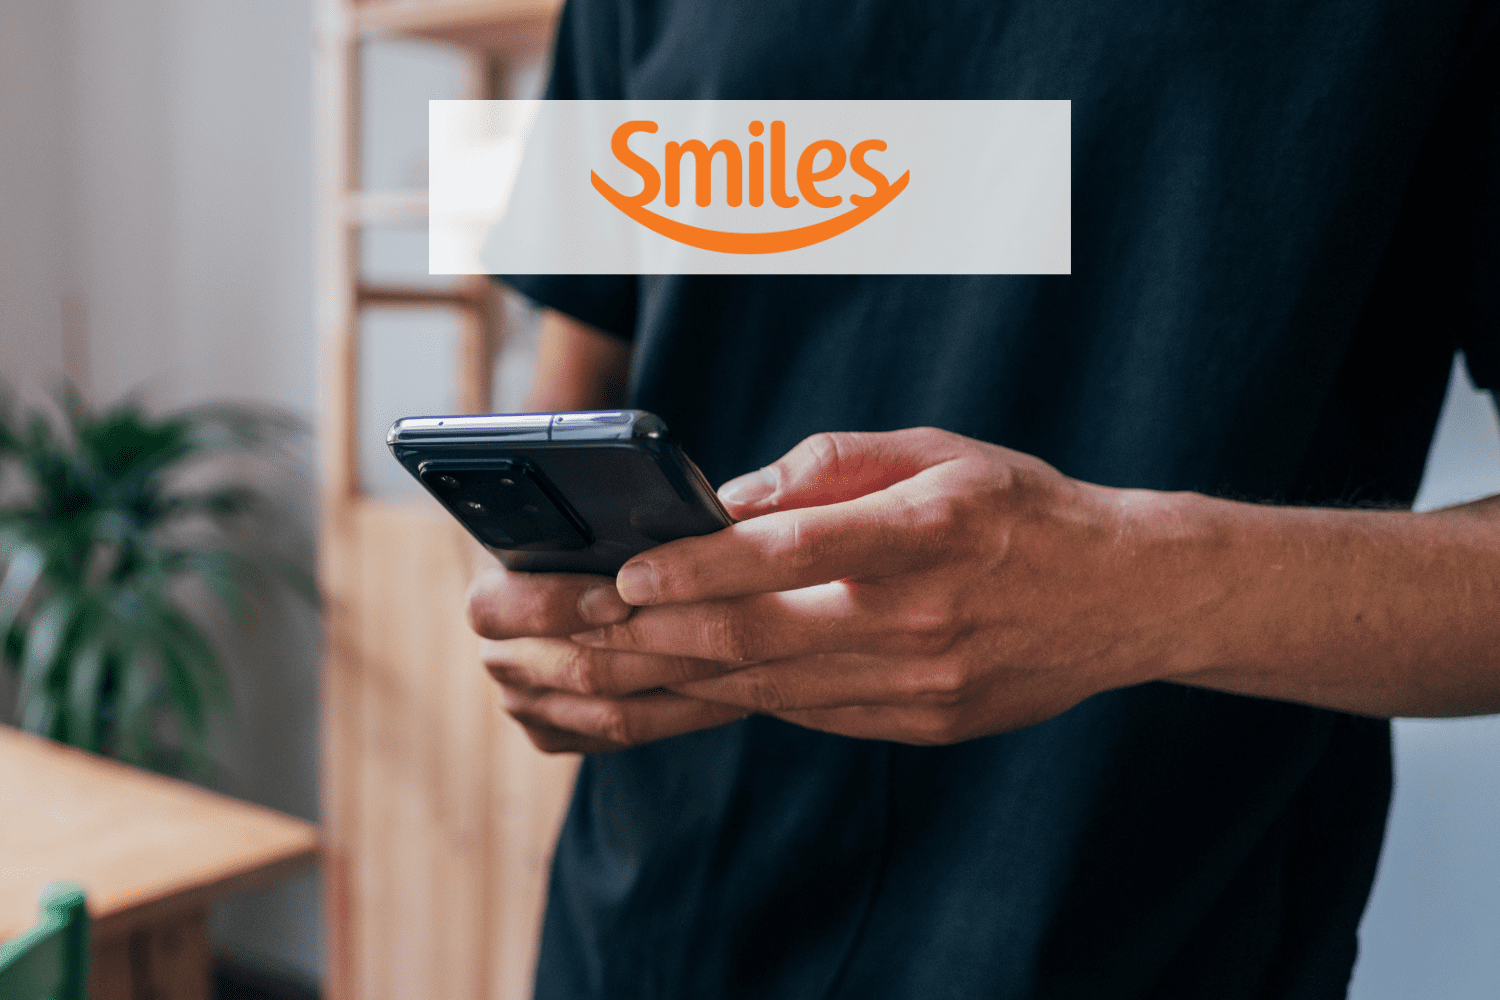 pessoa mexendo em um celular samsung com logo Smiles pontos Smiles